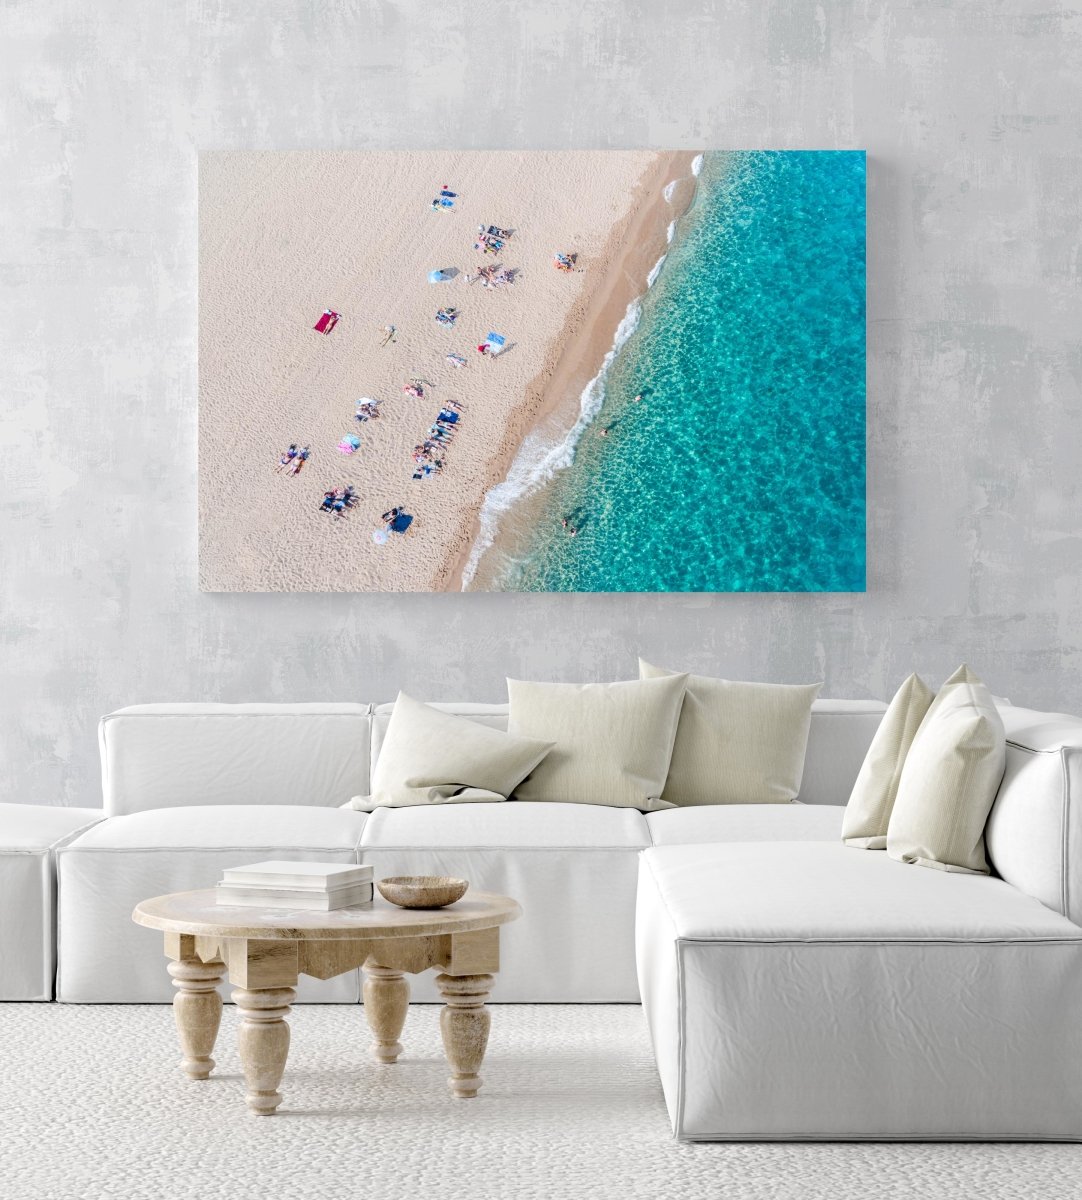 Simplistic aerial of blue ocean and people sunbathing in Costa Brava in an acrylic/perspex frame